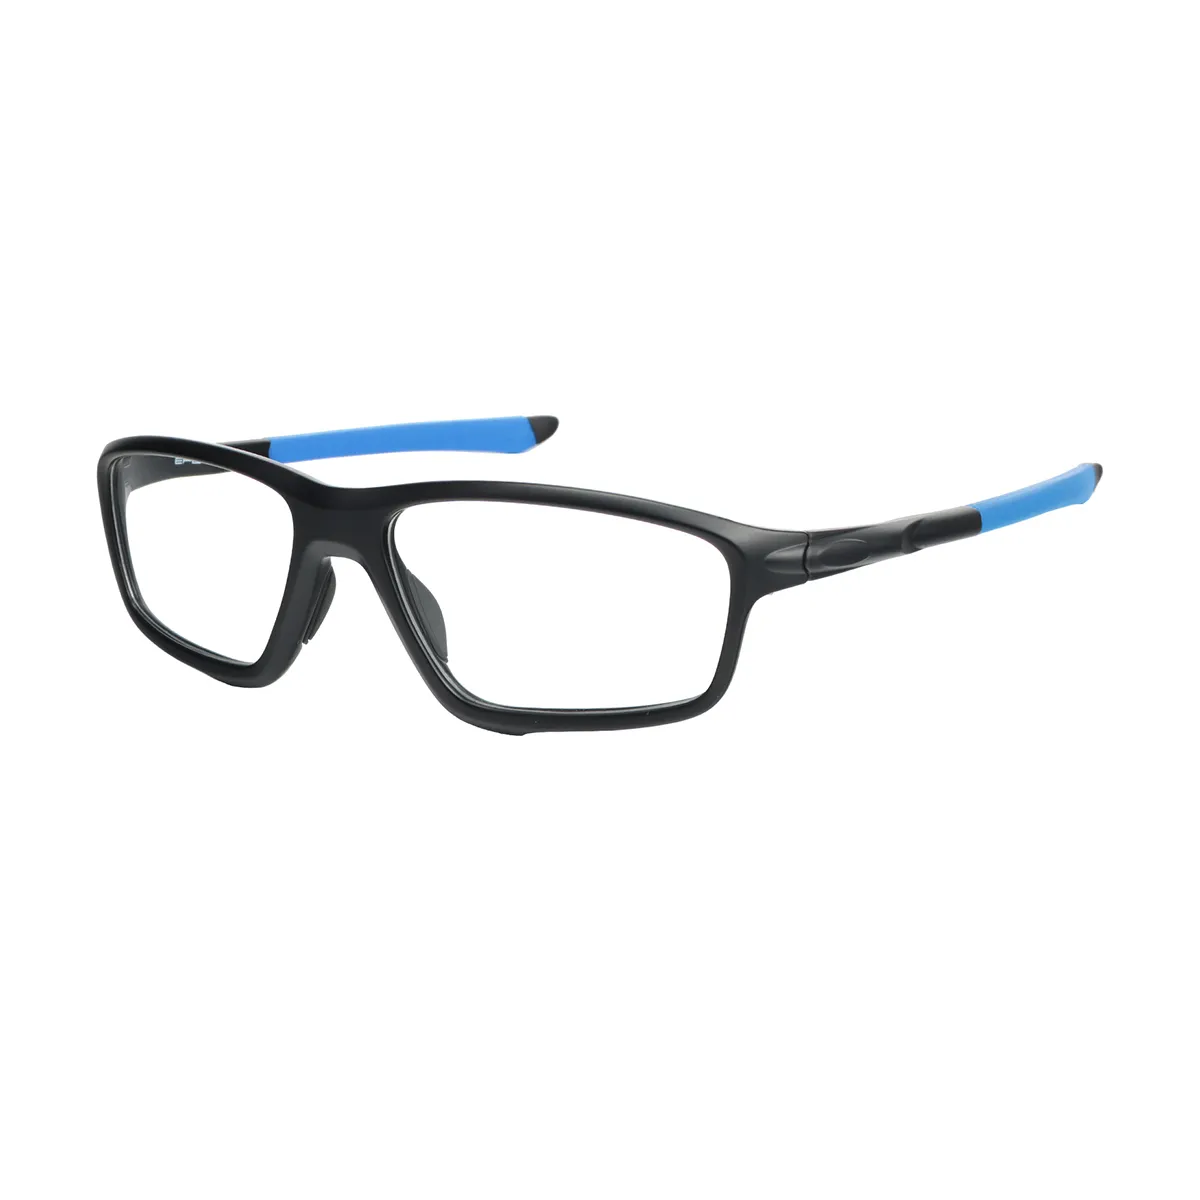 George - Rectangle Black-Blue Glasses for Men & Women